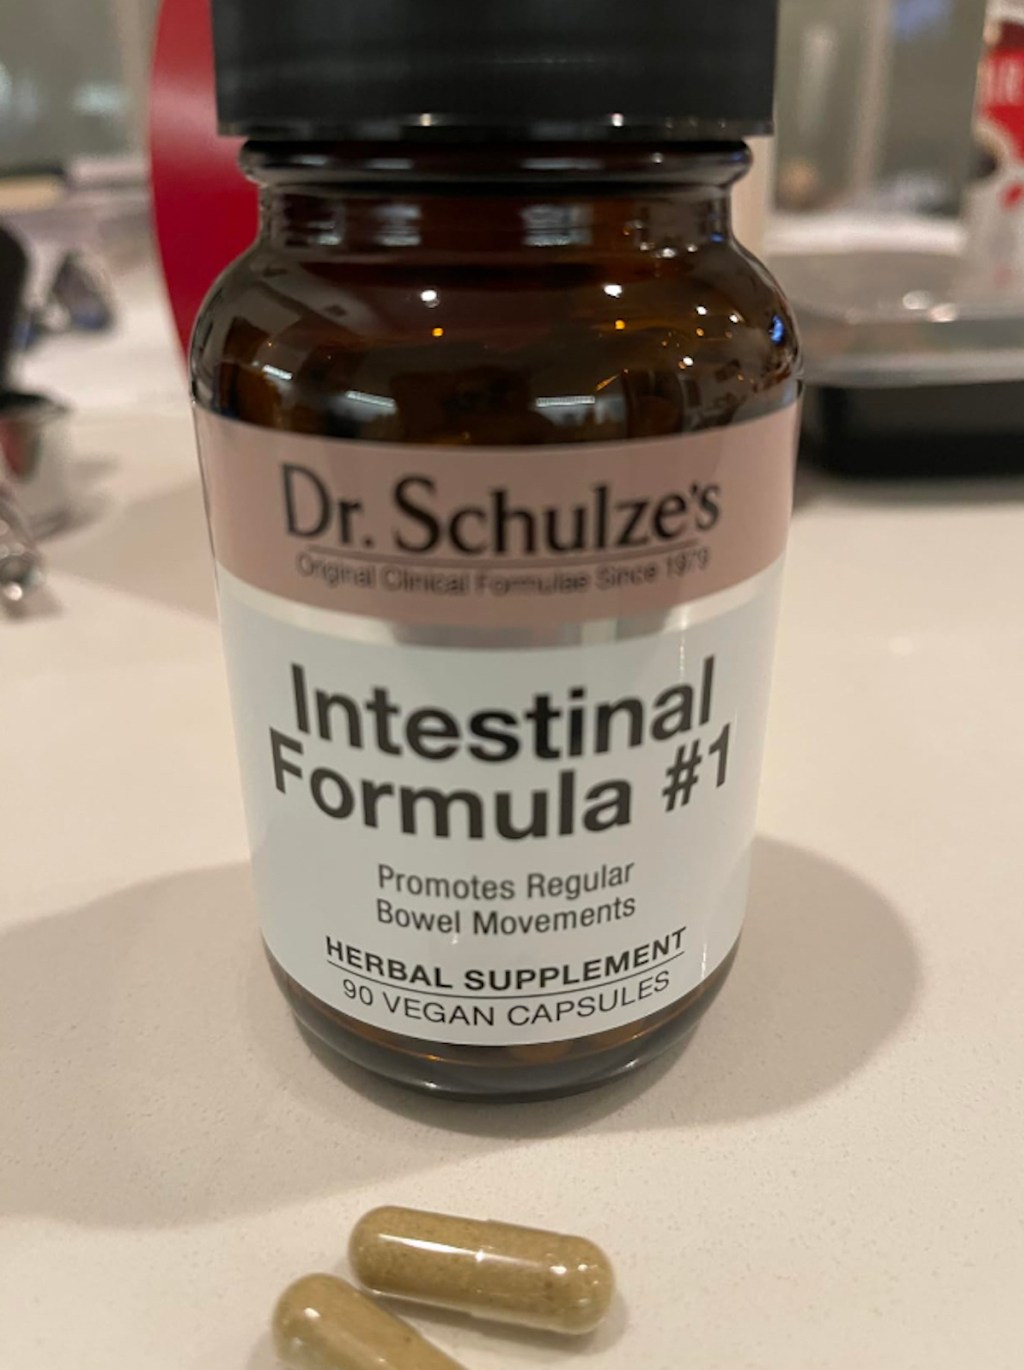 bottle of Dr. Schulze's Intestinal Formula #1 Colon Bowel Cleanse Laxative Capsules